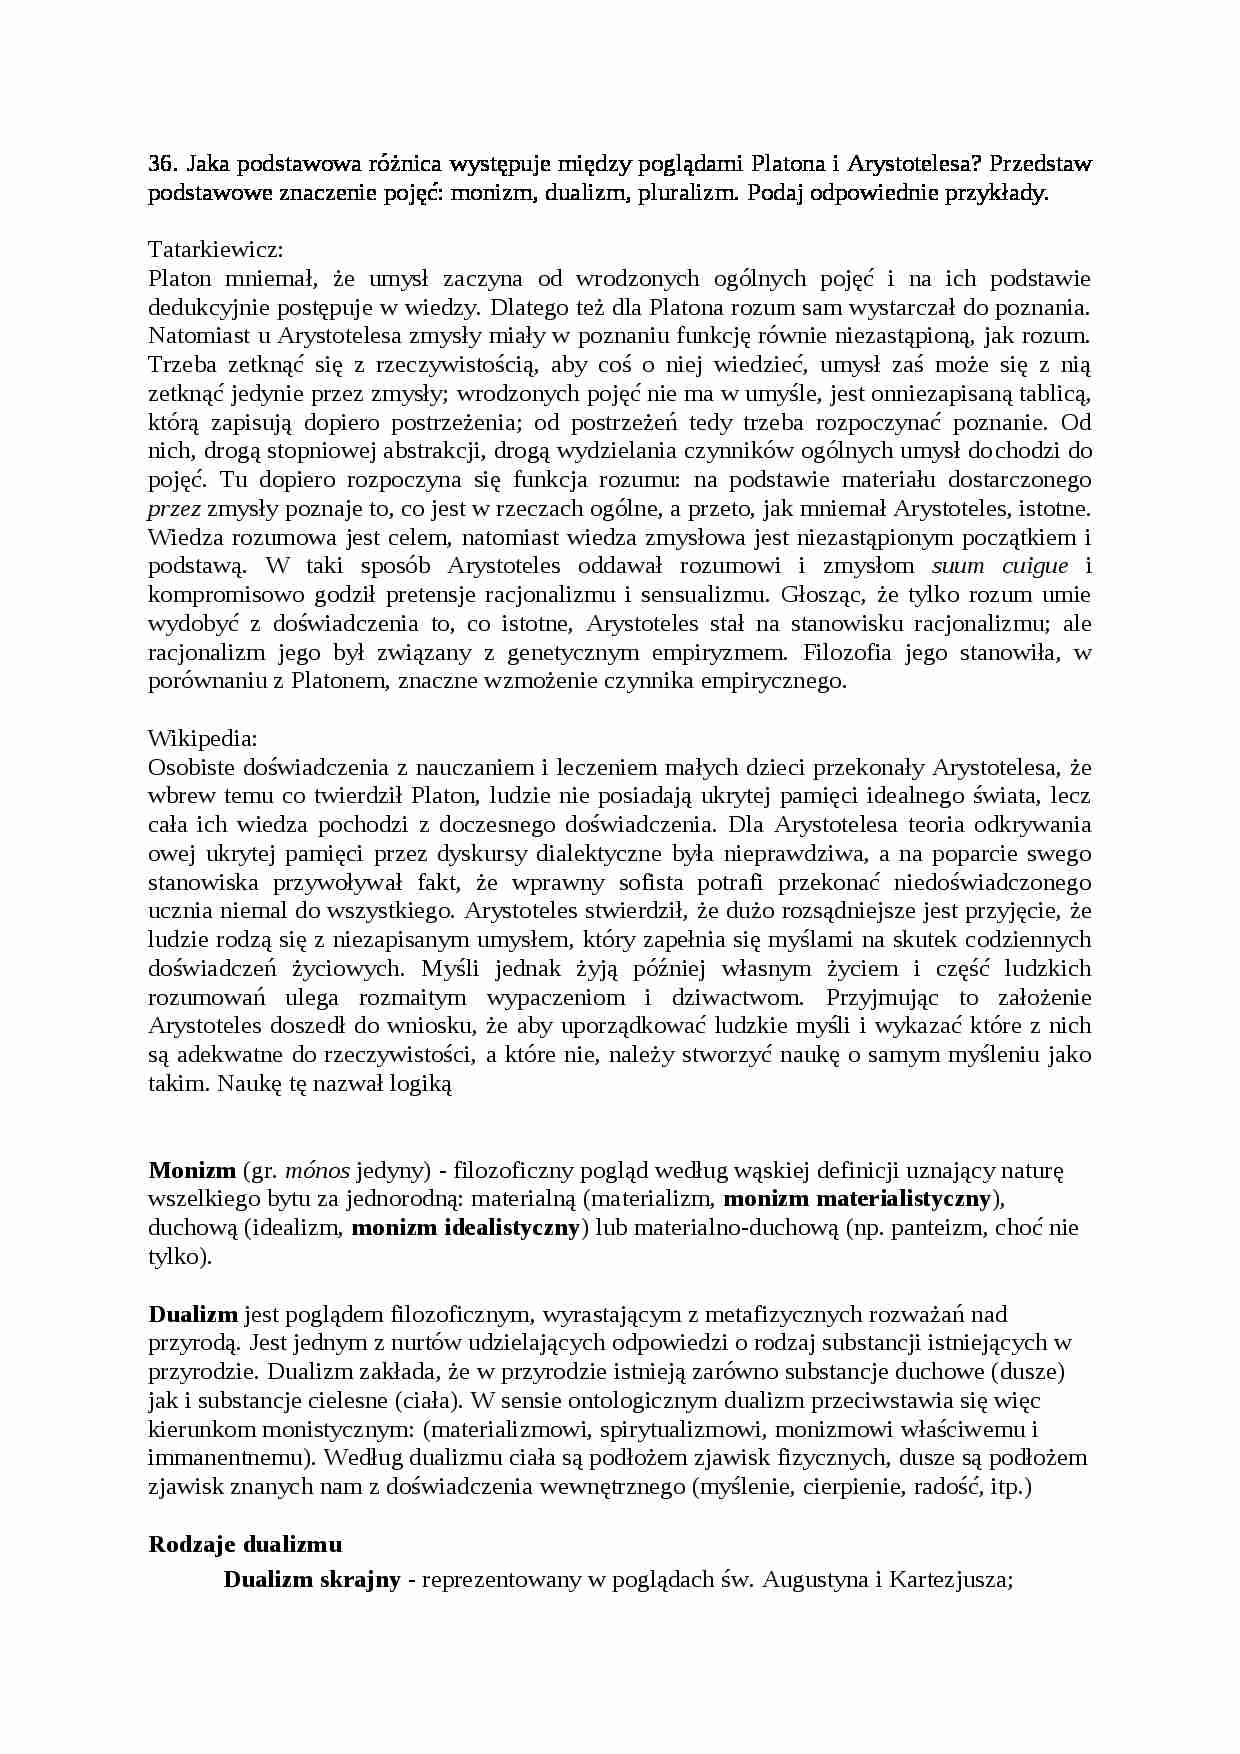 Opracowanie do egzaminu - Tatarkiewicz - strona 1